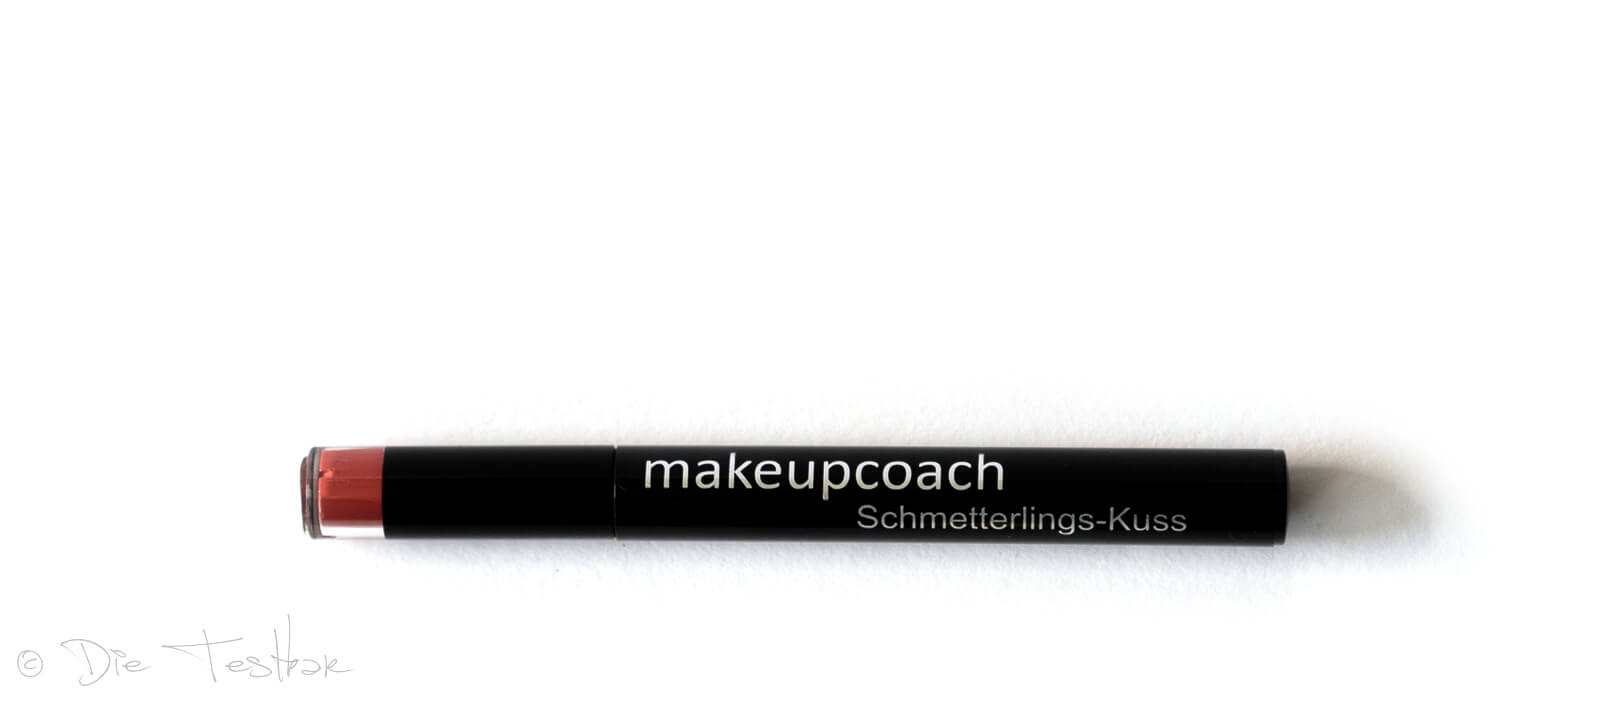 Für wunderschöne Lippen - Hochwertiges Lippen-Make-up vom makeupcoach 20